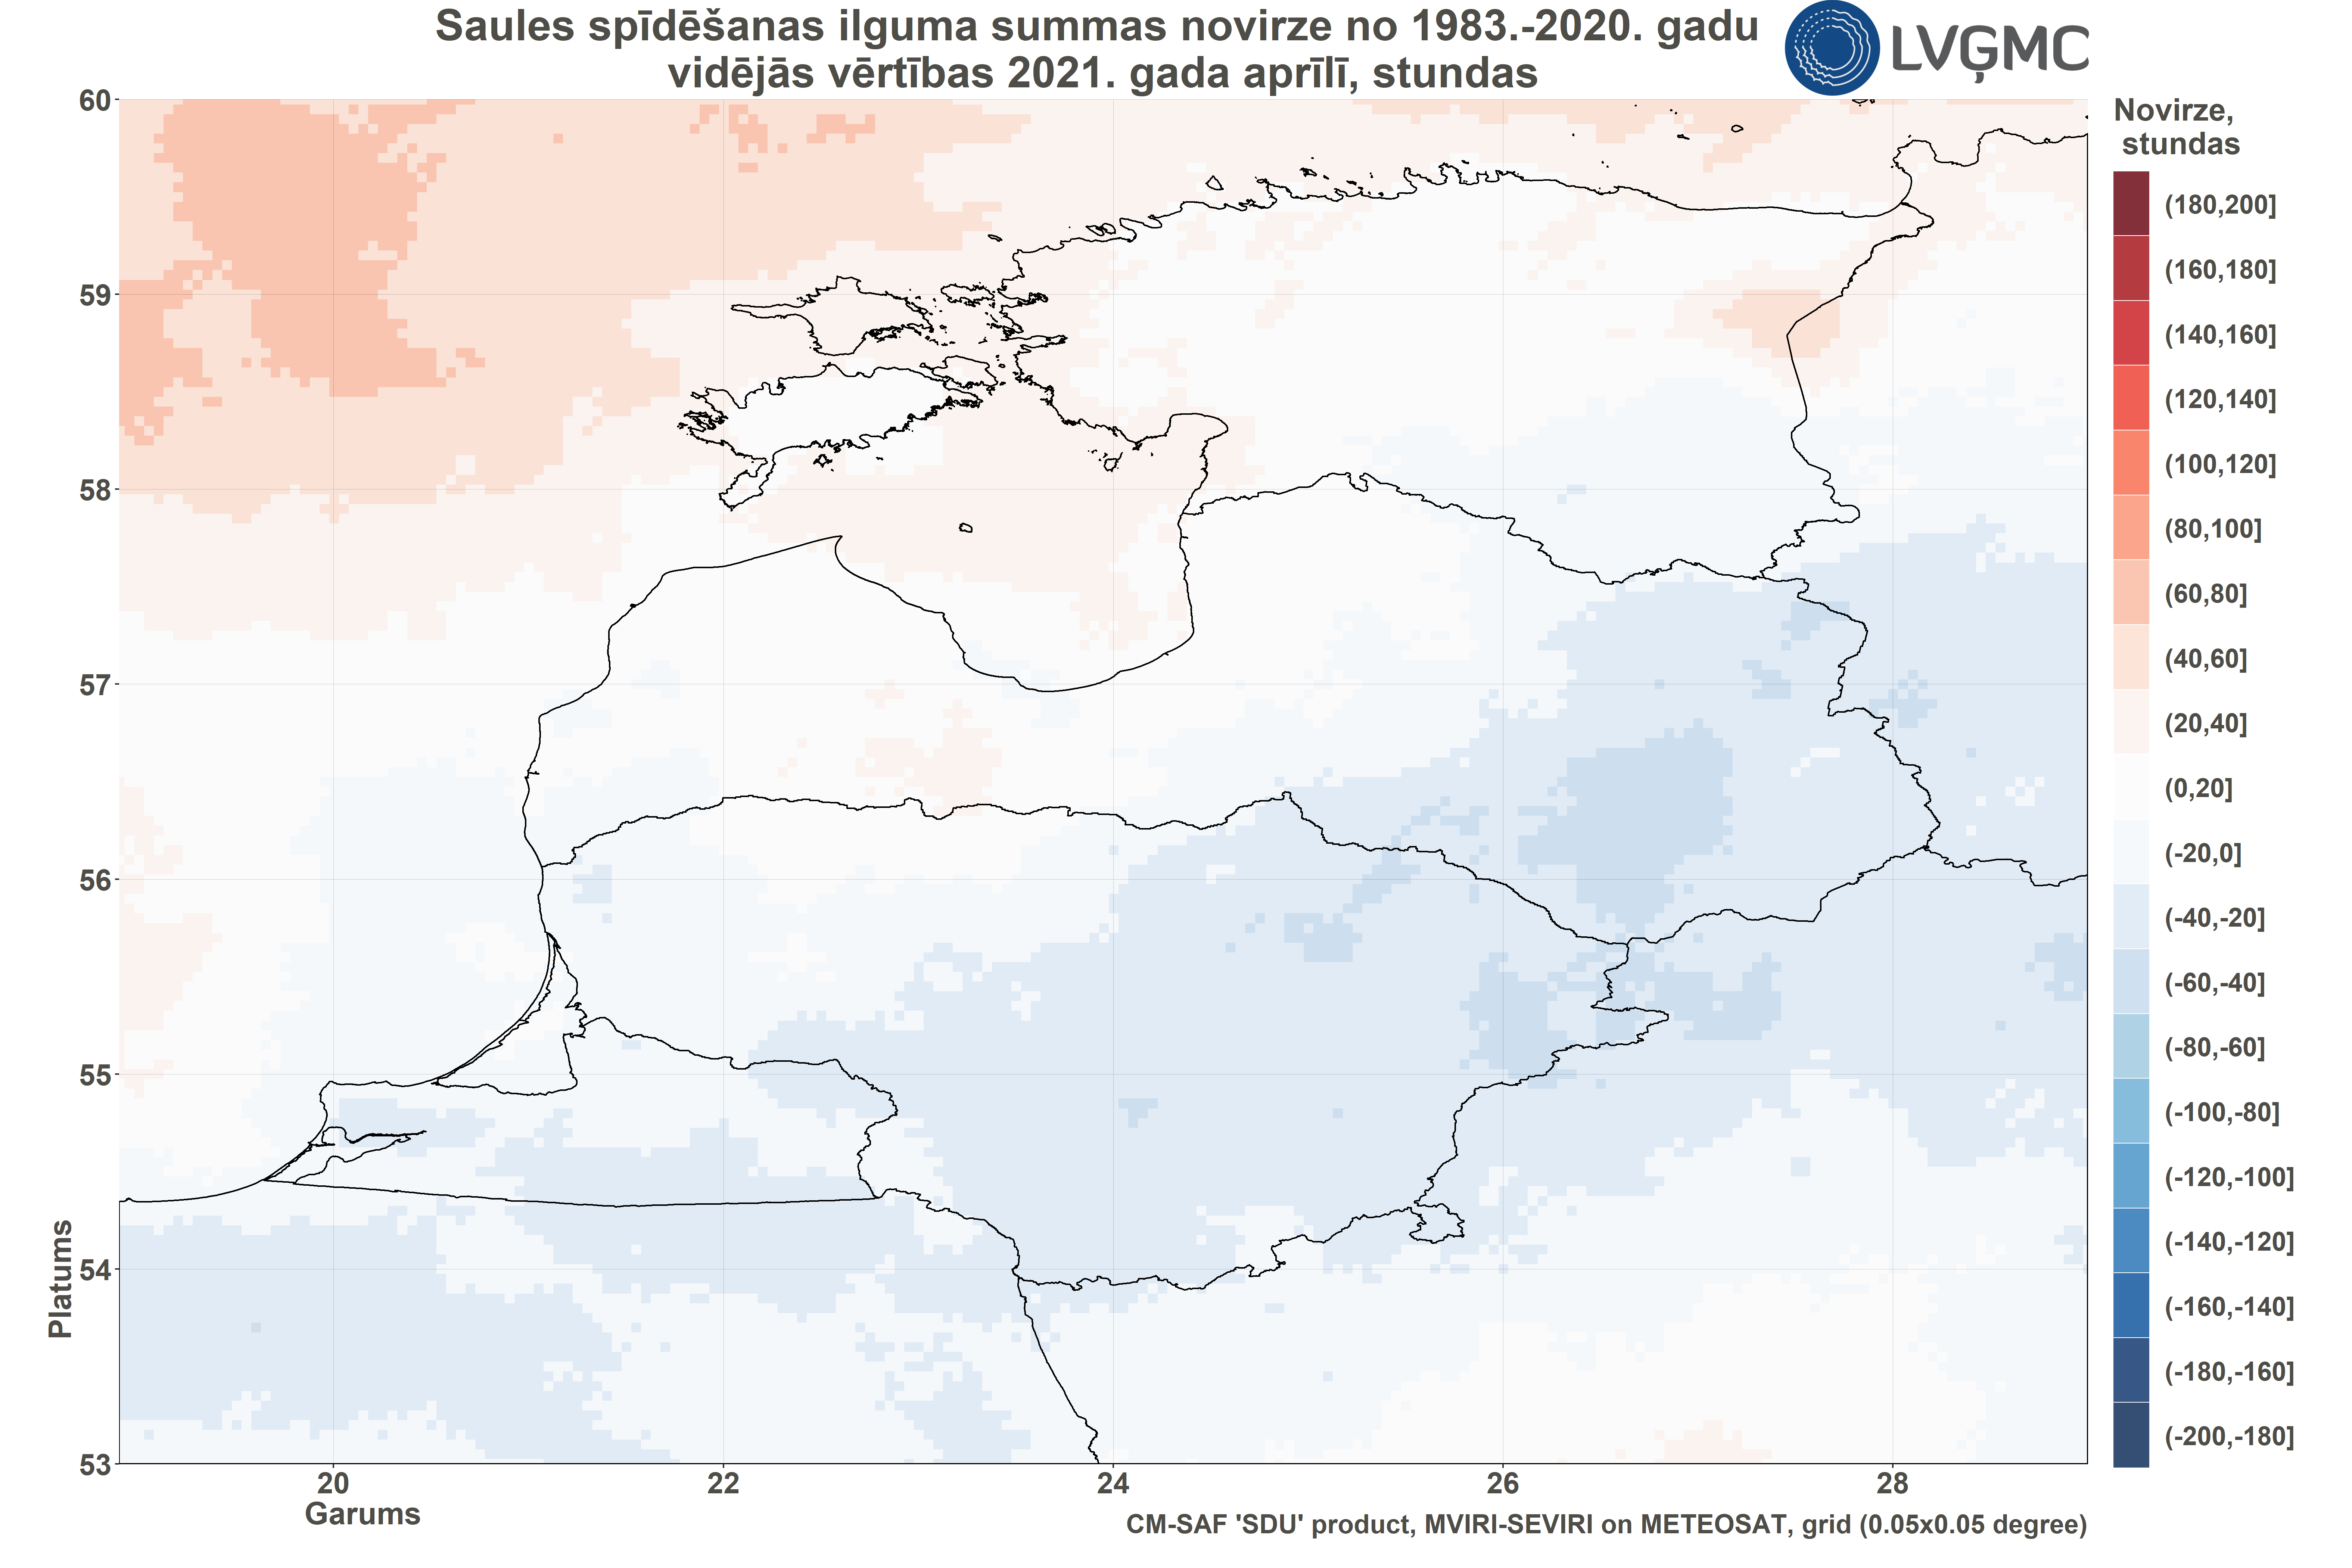 Saules spīdēšanas ilguma novirze no normas 2021. gada aprīlī, h